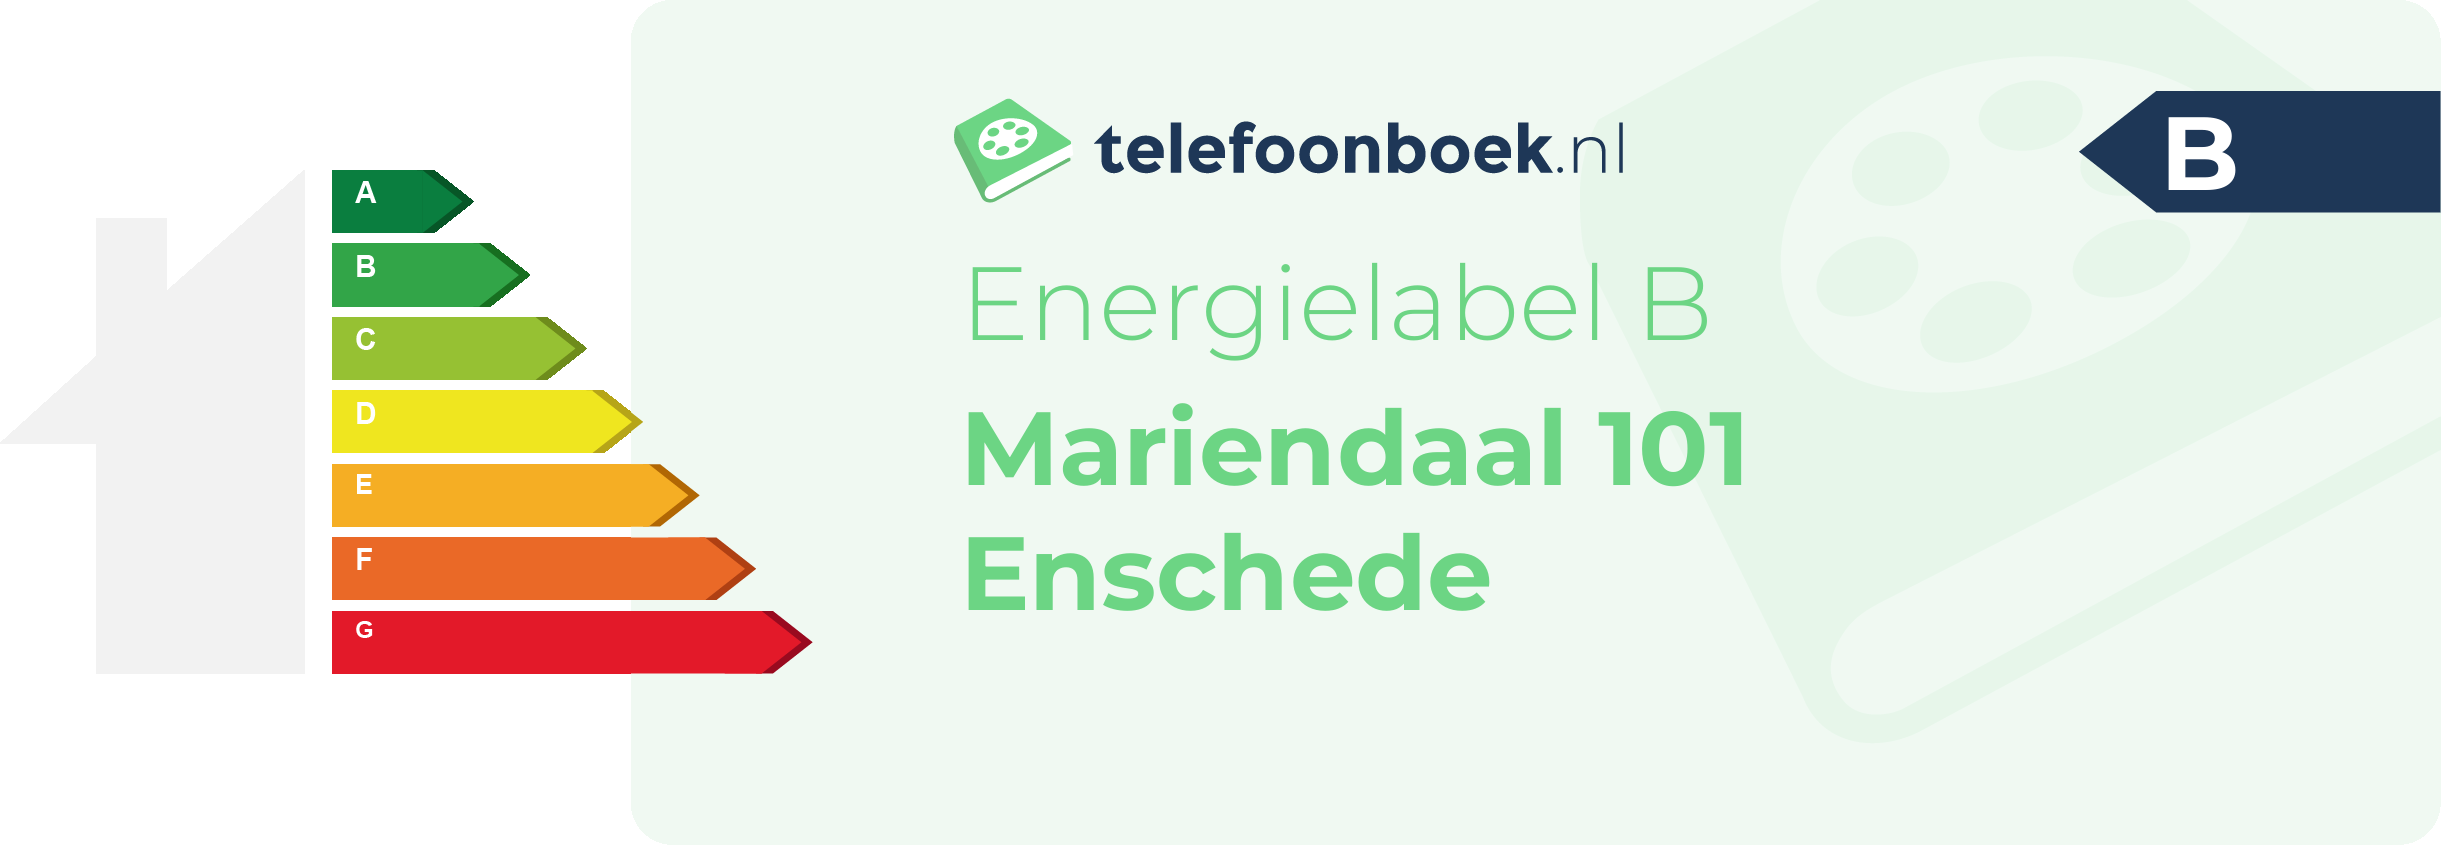 Energielabel Mariendaal 101 Enschede